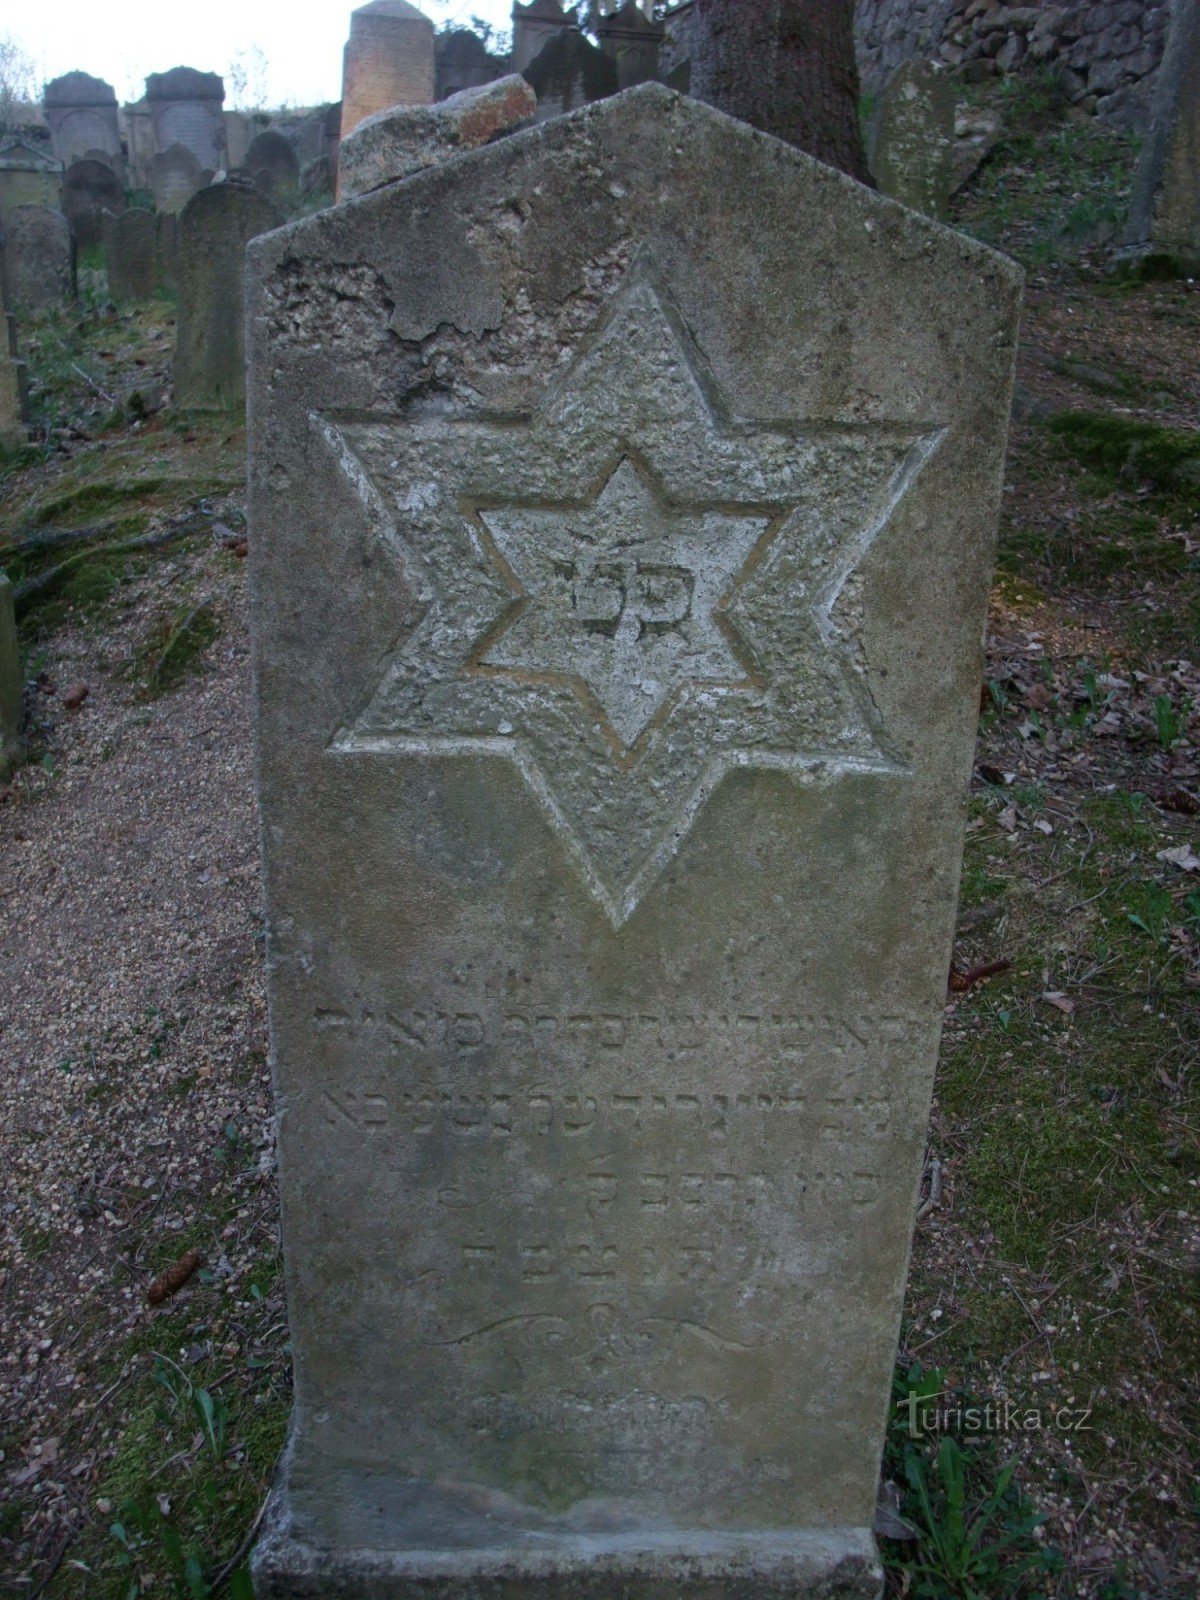 Єврейський цвинтар в Убочі